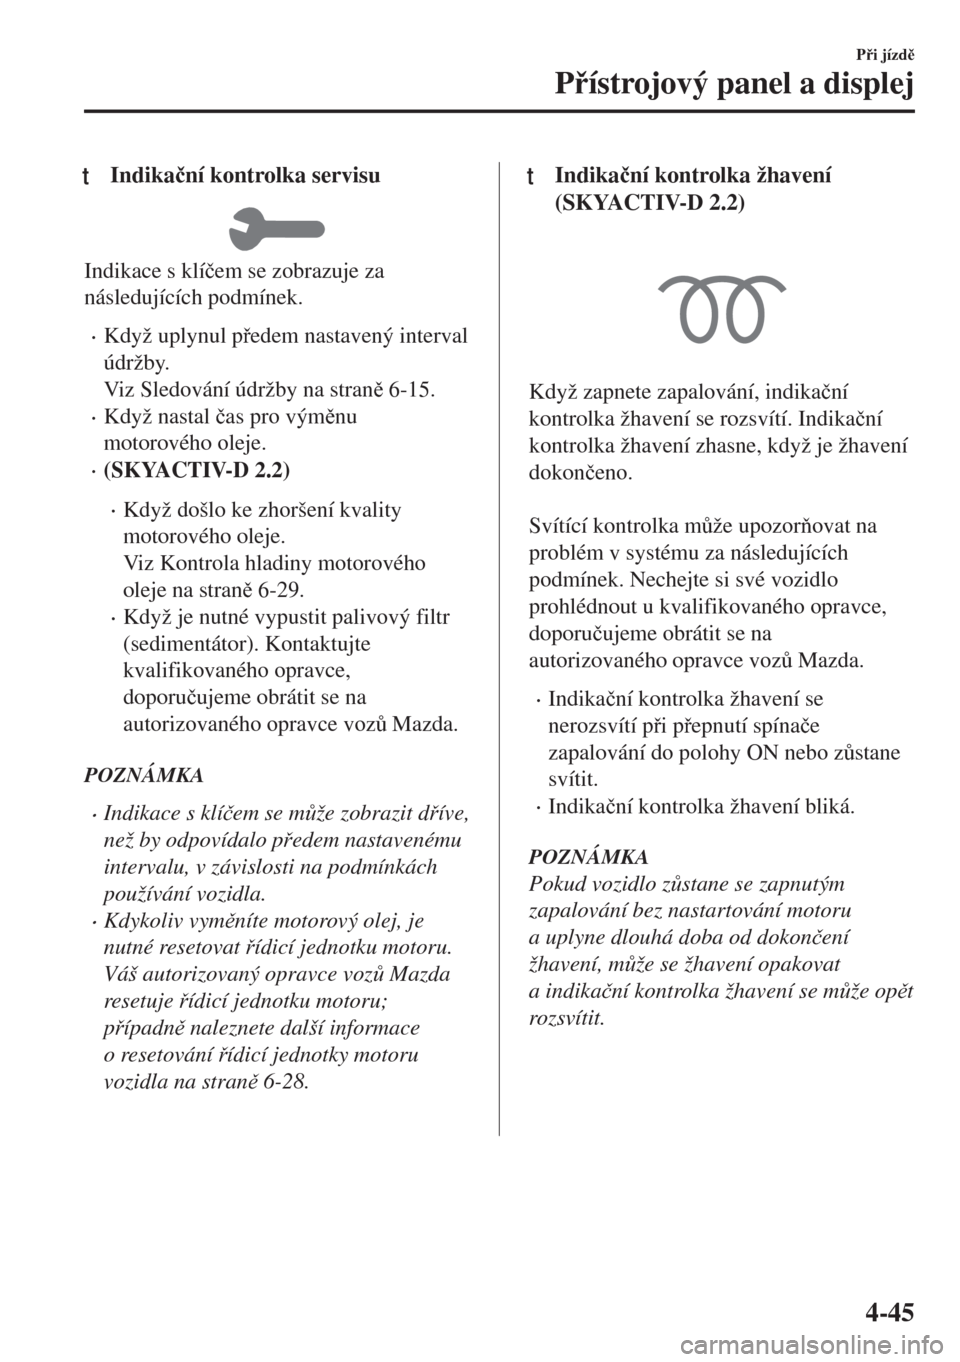 MAZDA MODEL 6 2018  Návod k obsluze (in Czech) tIndika�þní kontrolka servisu
Indikace s klí�þem se zobrazuje za
následujících podmínek.
•Když uplynul pedem nastavený interval
údržby.
Viz Sledování údržby na stran 6-15.
•Kdy